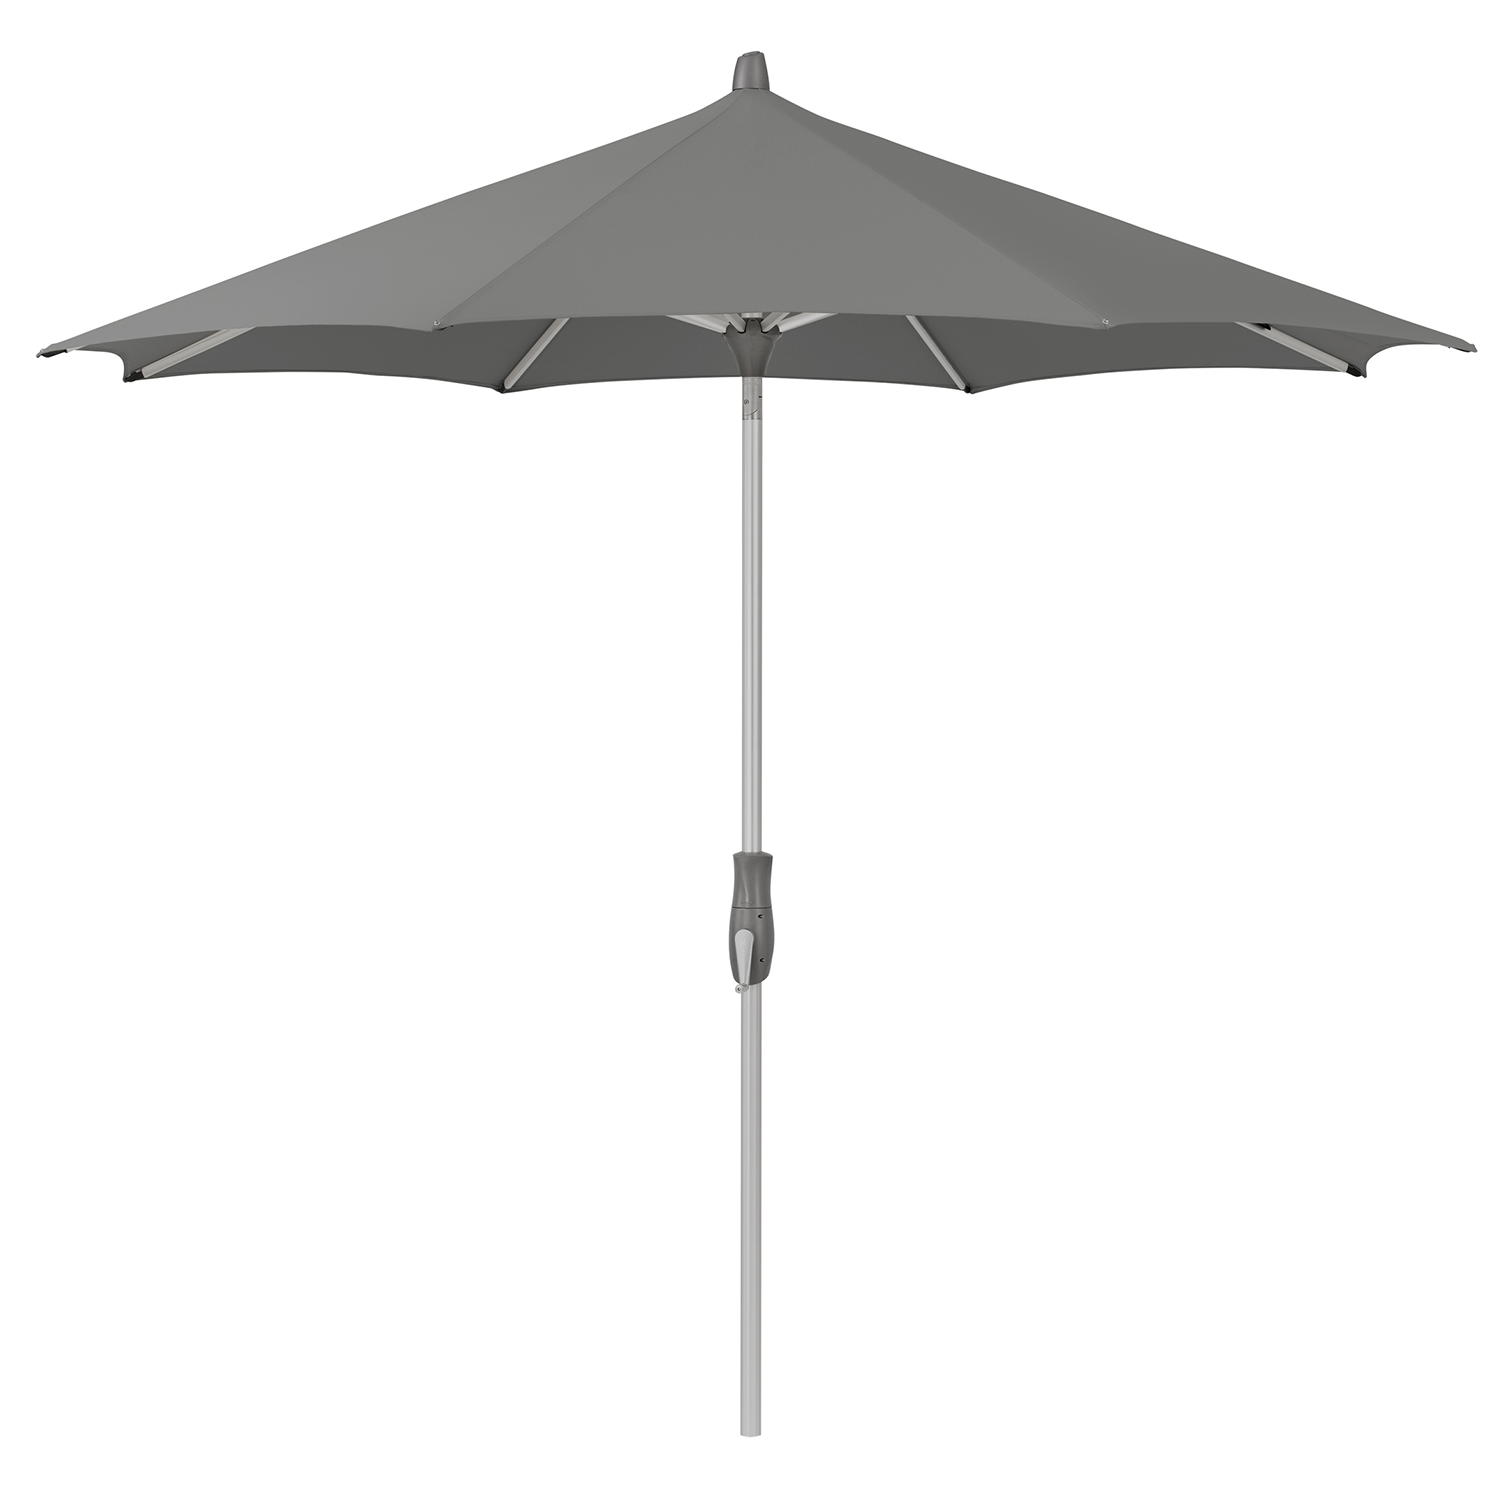 Parasol Alu-Twist 270cm (stone grey)